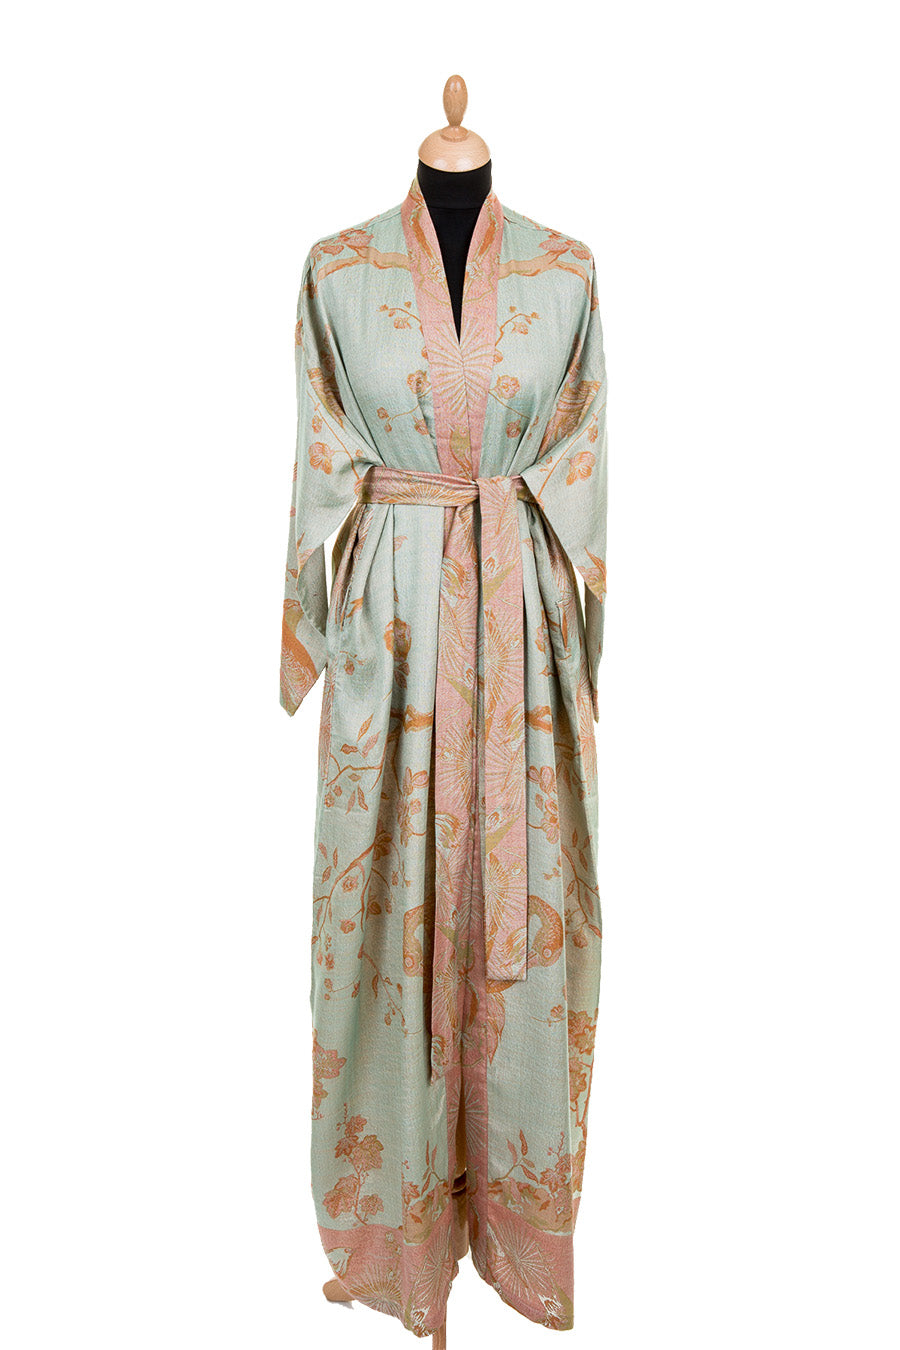 Robes | Silk Robes | Linen Robes | Silk Bathrobe | Long Satin Robes